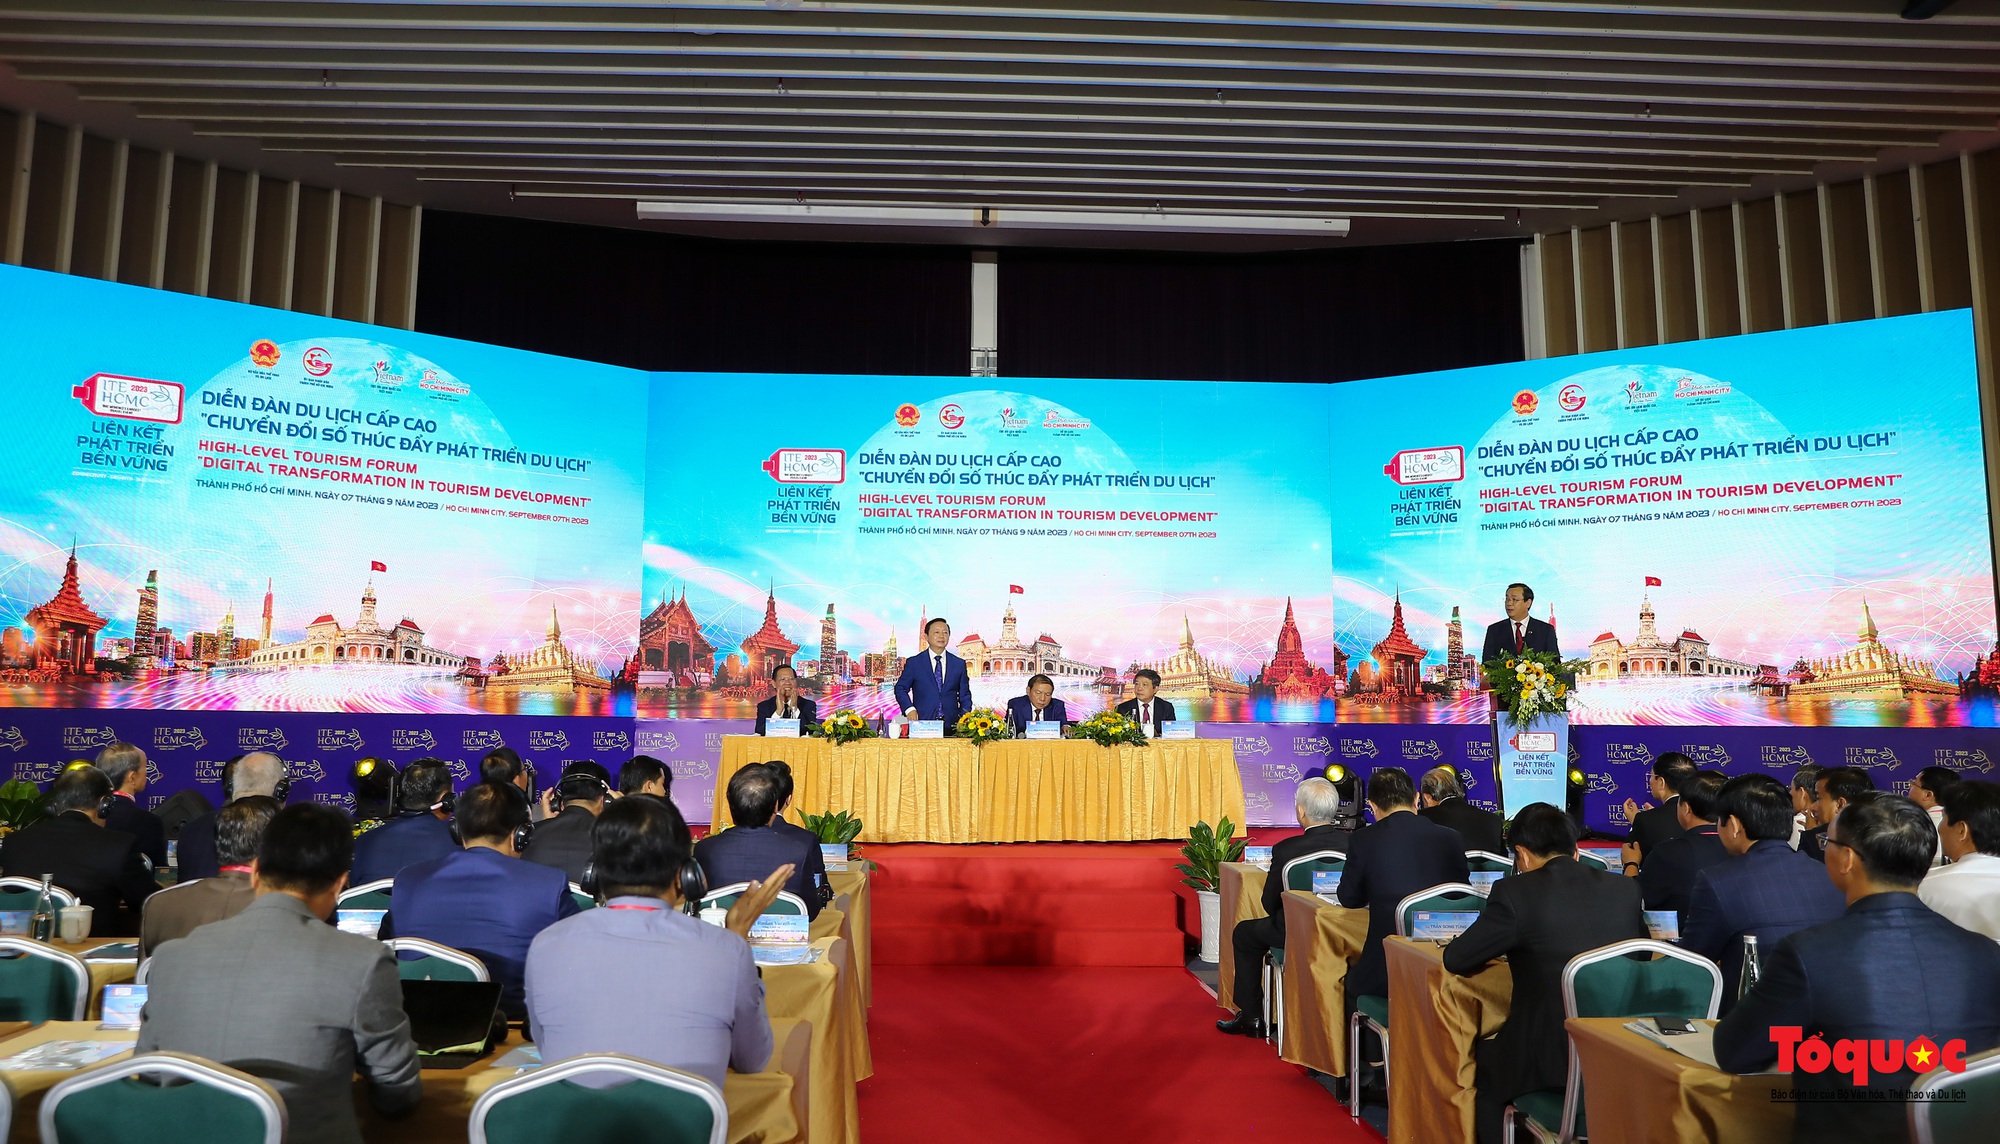 Chùm ảnh: Khai mạc Hội chợ Du lịch Quốc tế TP Hồ Chí Minh lần thứ 17 - Ảnh 13.